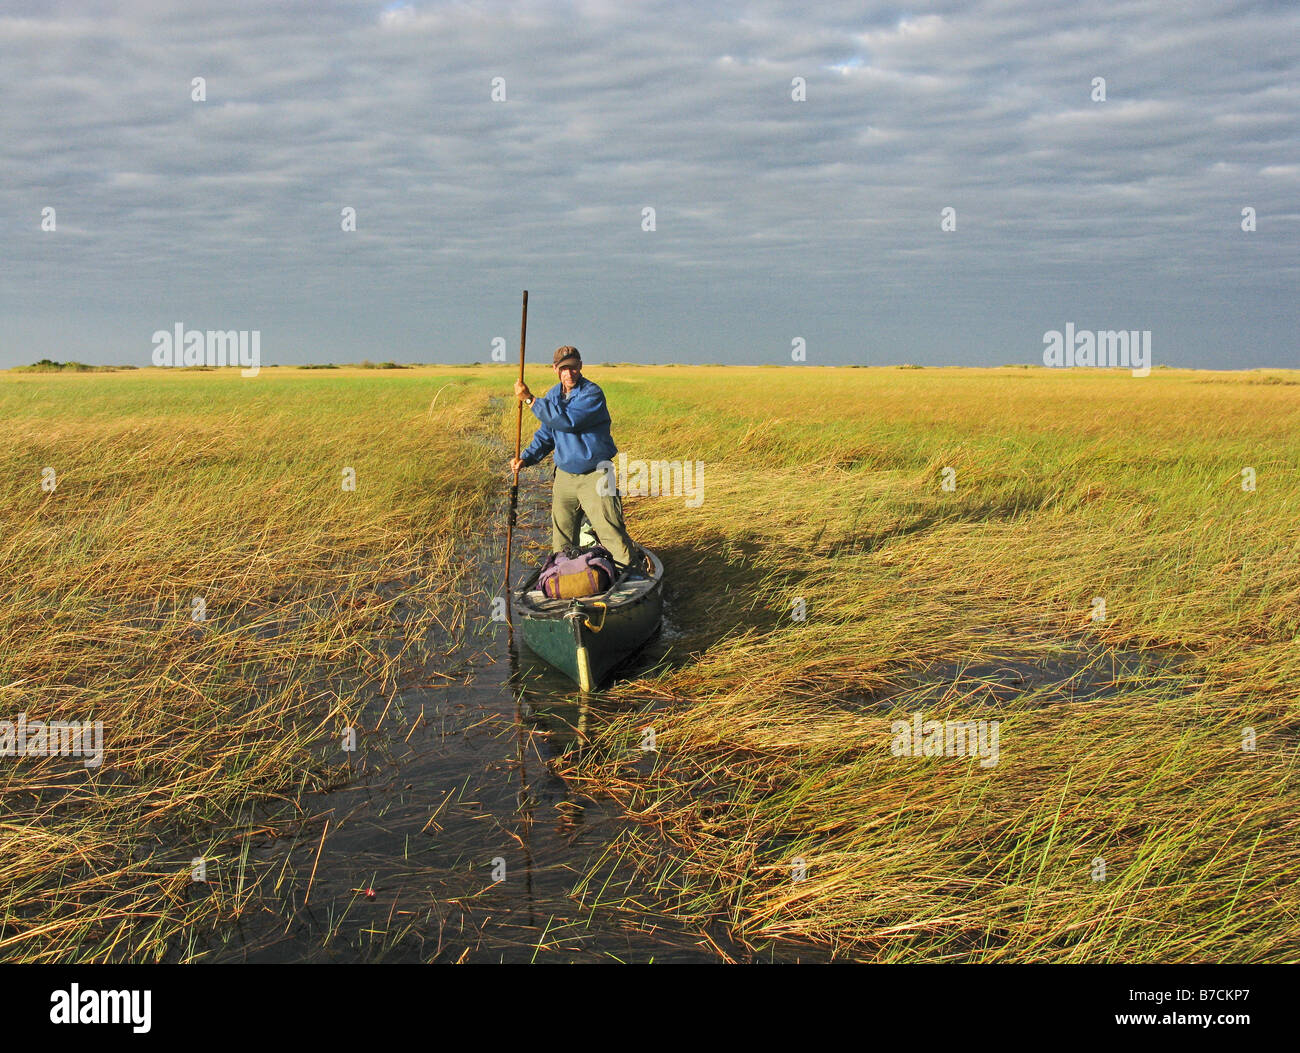 Phil Harwood mit Pol Kanadier durch Rasen Untiefen der Bangweulu Sumpf im Feuchtgebiet von Sambia am Kongo-Fluss zu fahren Stockfoto